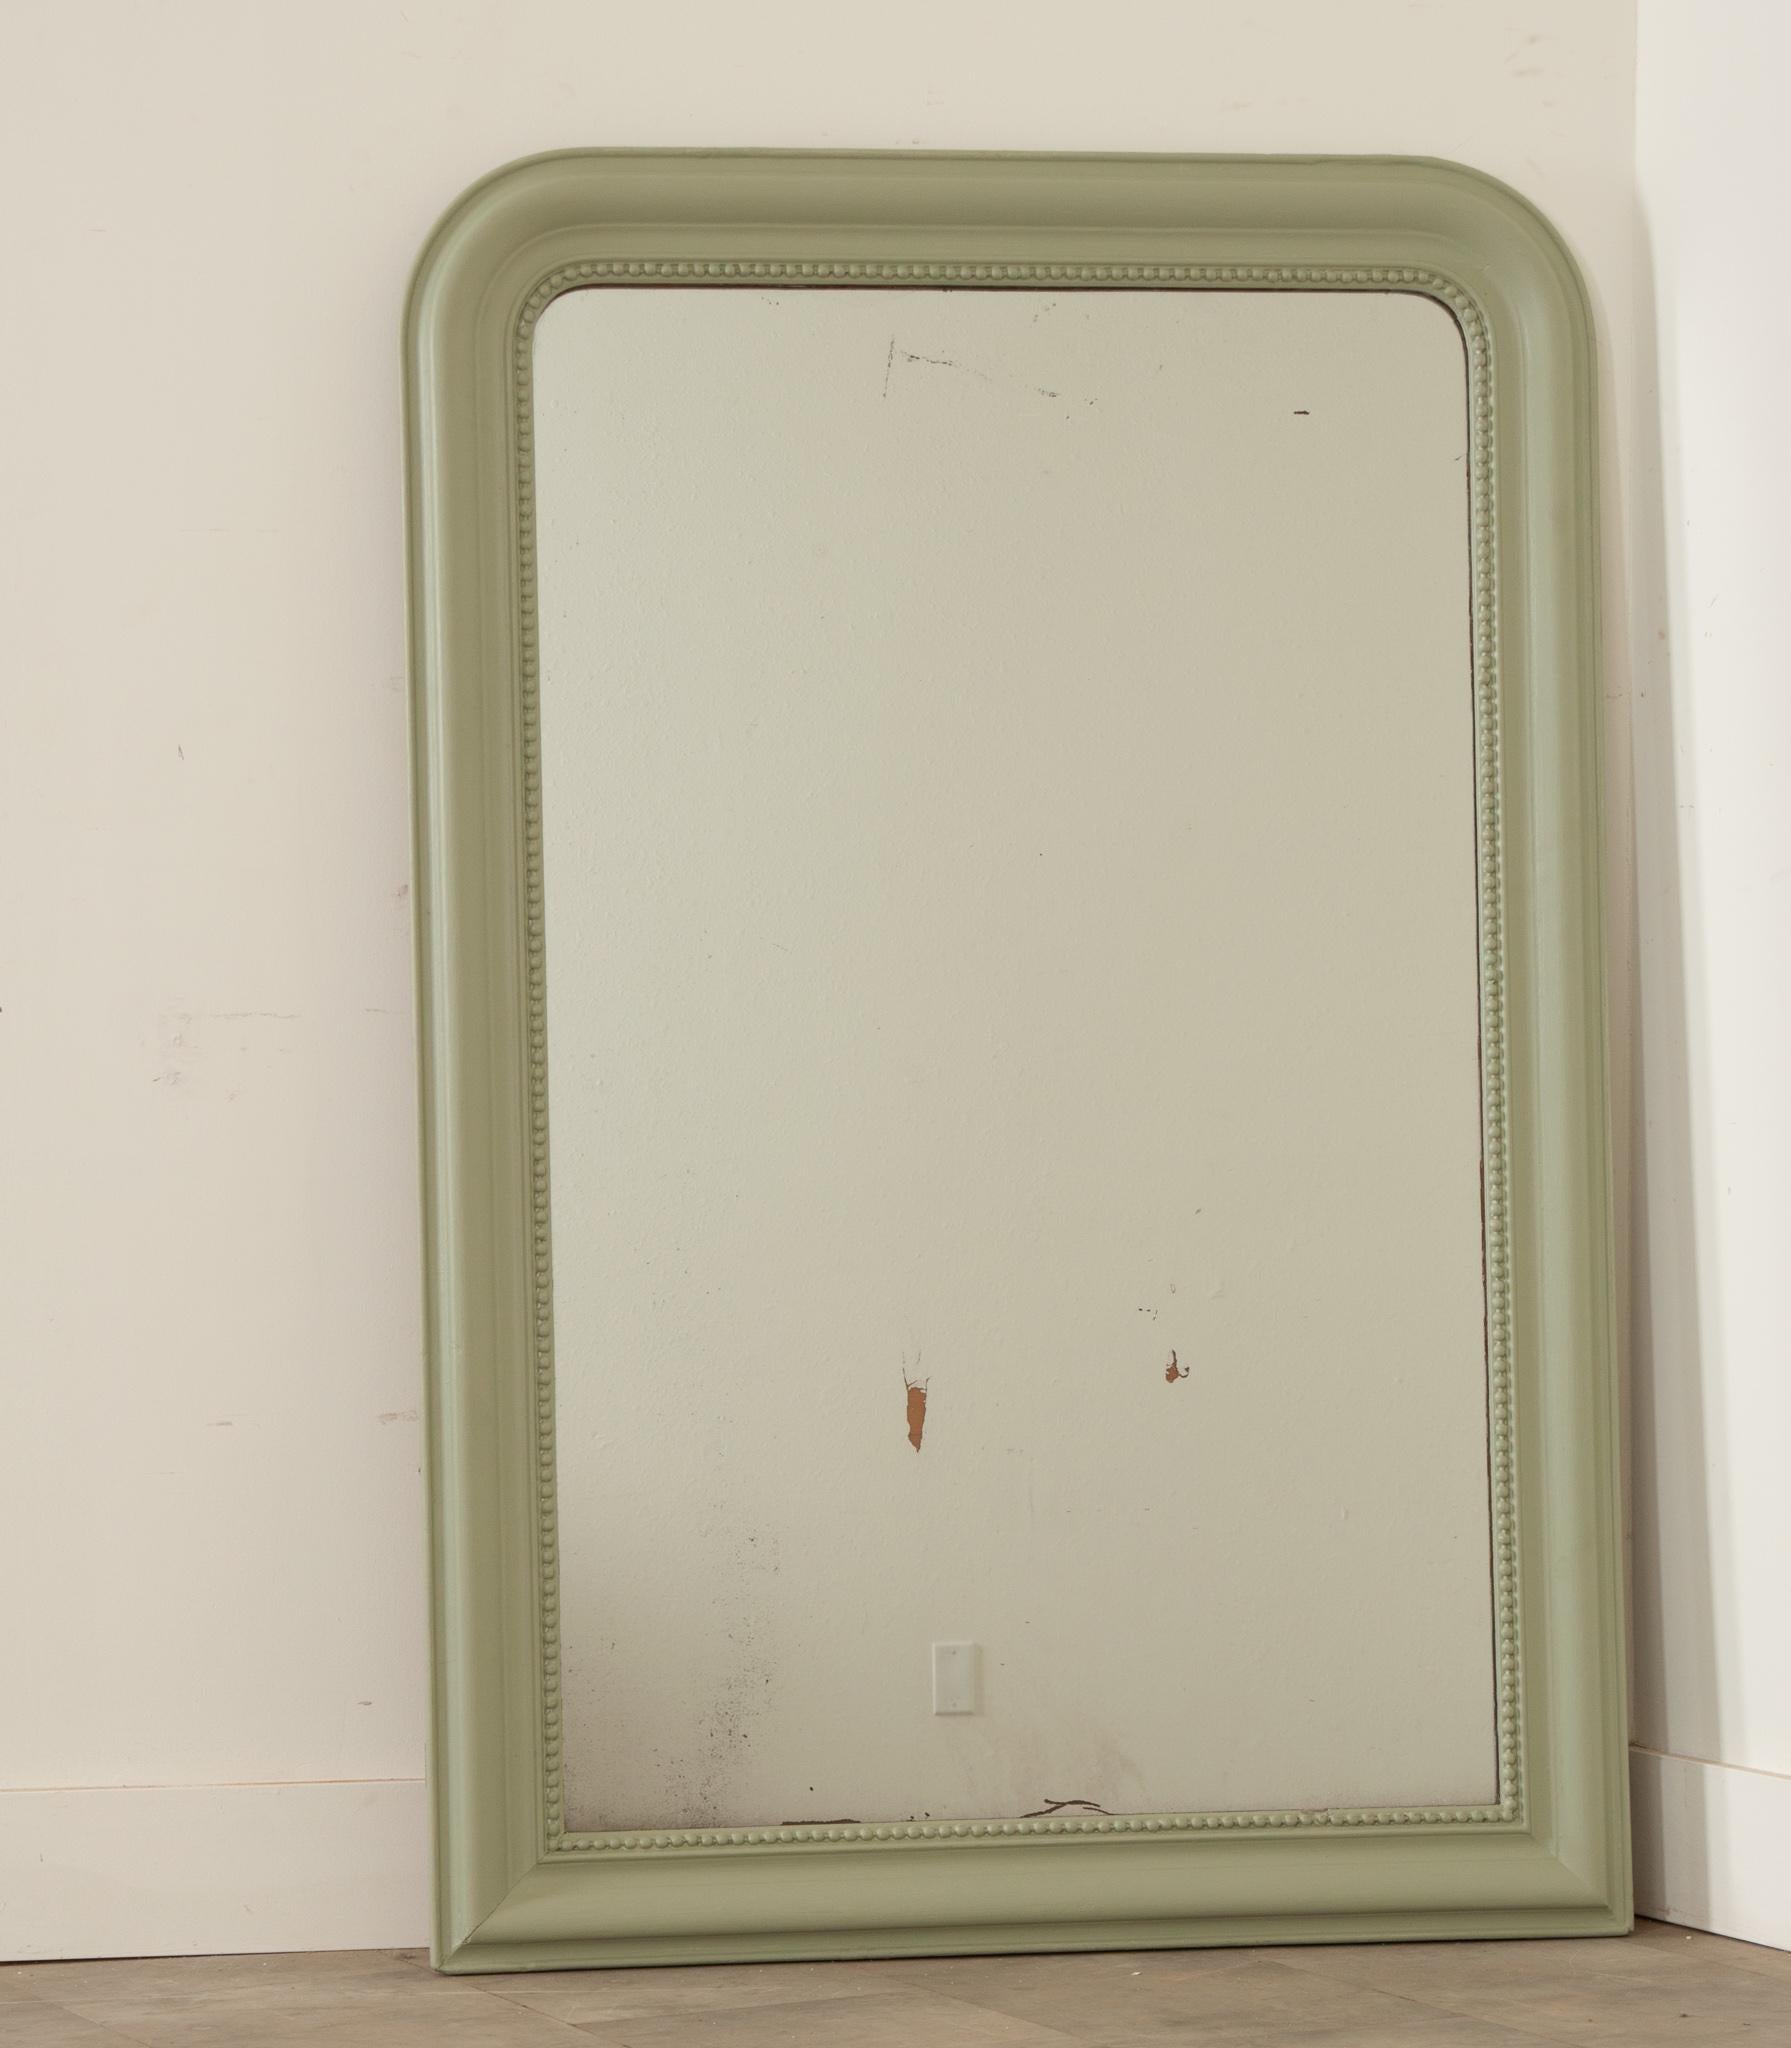 Dieser klassisch gestaltete Louis Philippe-Spiegel wurde kürzlich mit Farrow & Ball gestrichen, um ihm neues Leben einzuhauchen. Die Original-Quecksilber-Spiegelplatte ist noch erhalten und weist einige authentische Beschädigungen auf, bietet aber